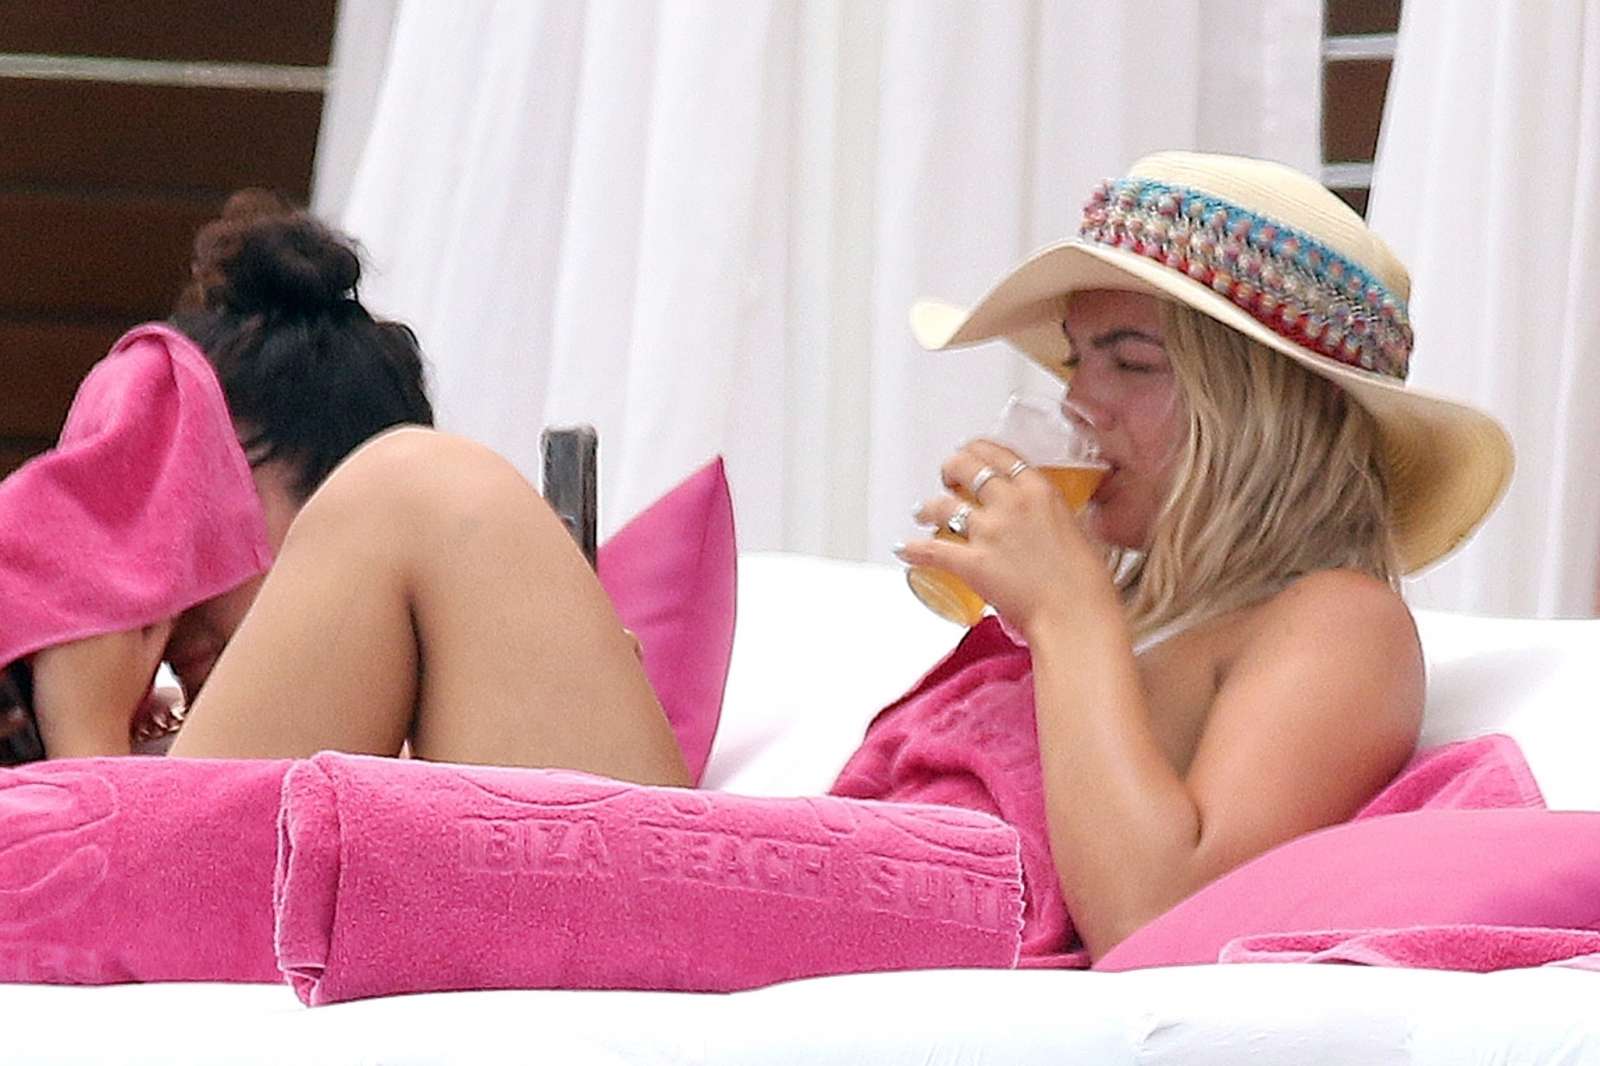 Louisa Johnson â€“ Bikini by the pool with a friend in Ibiza